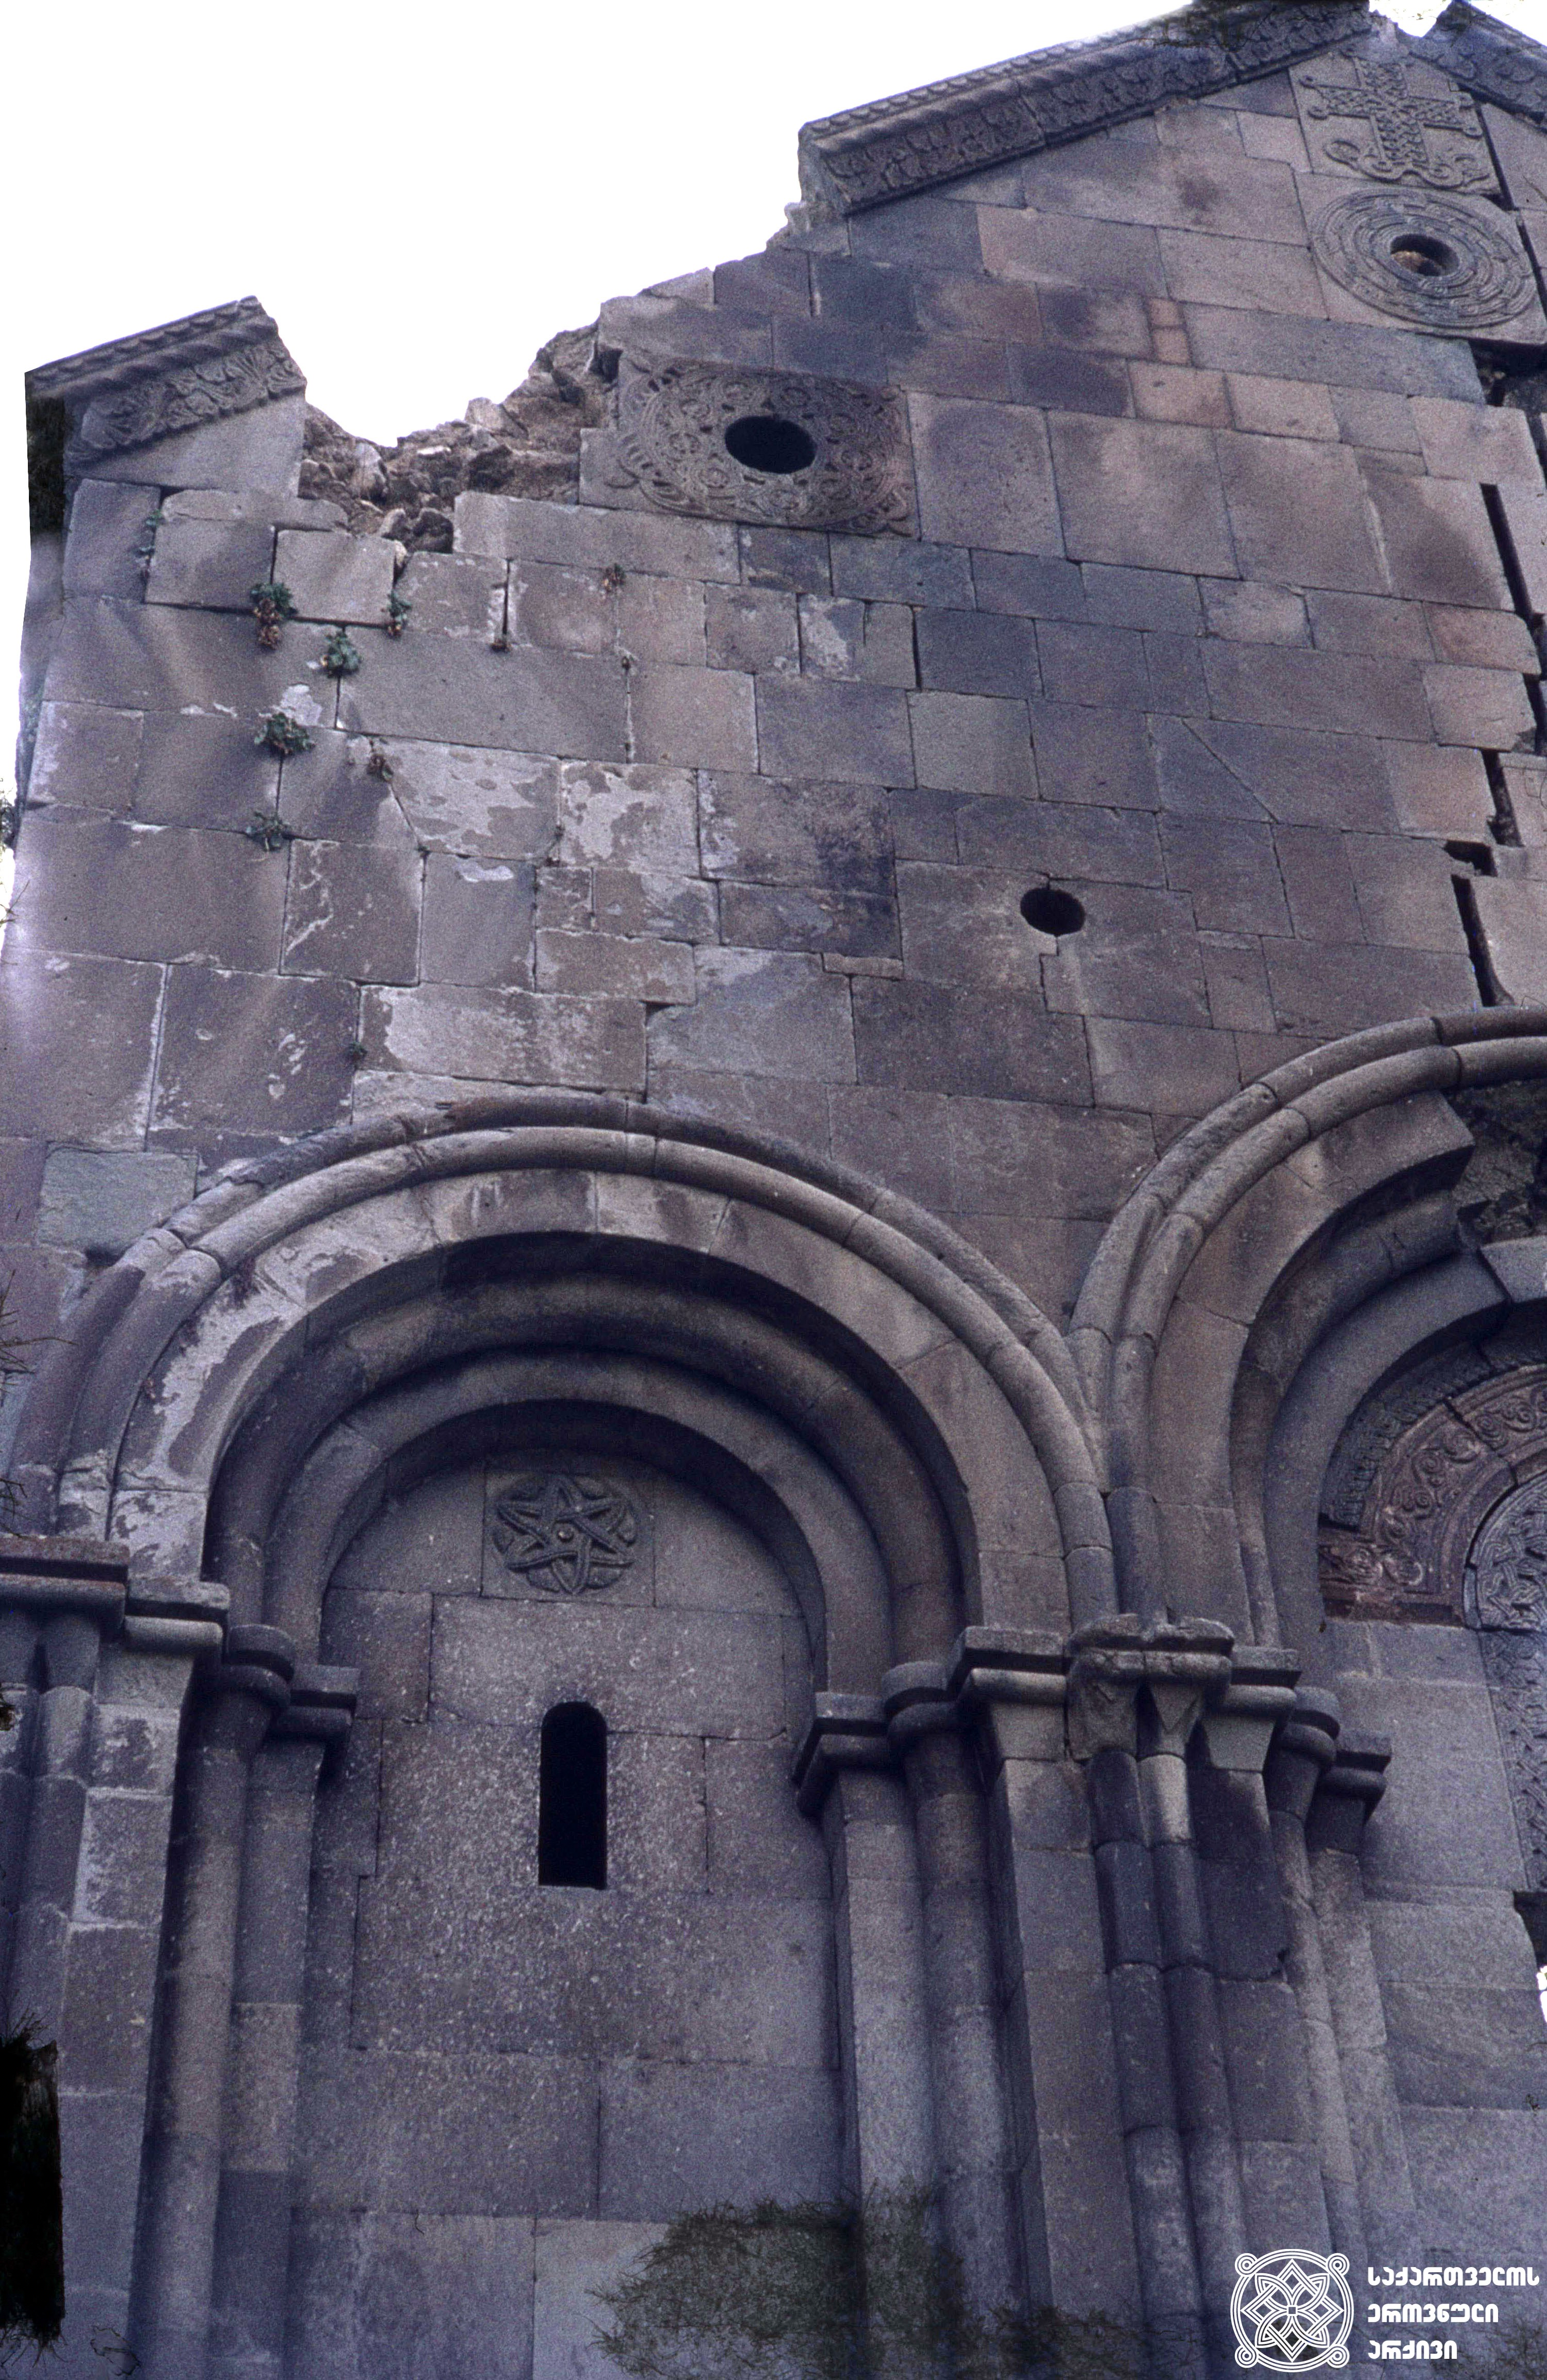 [1950-70-იანი წლები]
ტბეთი, ტაძრის დეტალი.
<br>
[1950-70]
Tbeti, cathedral detail.